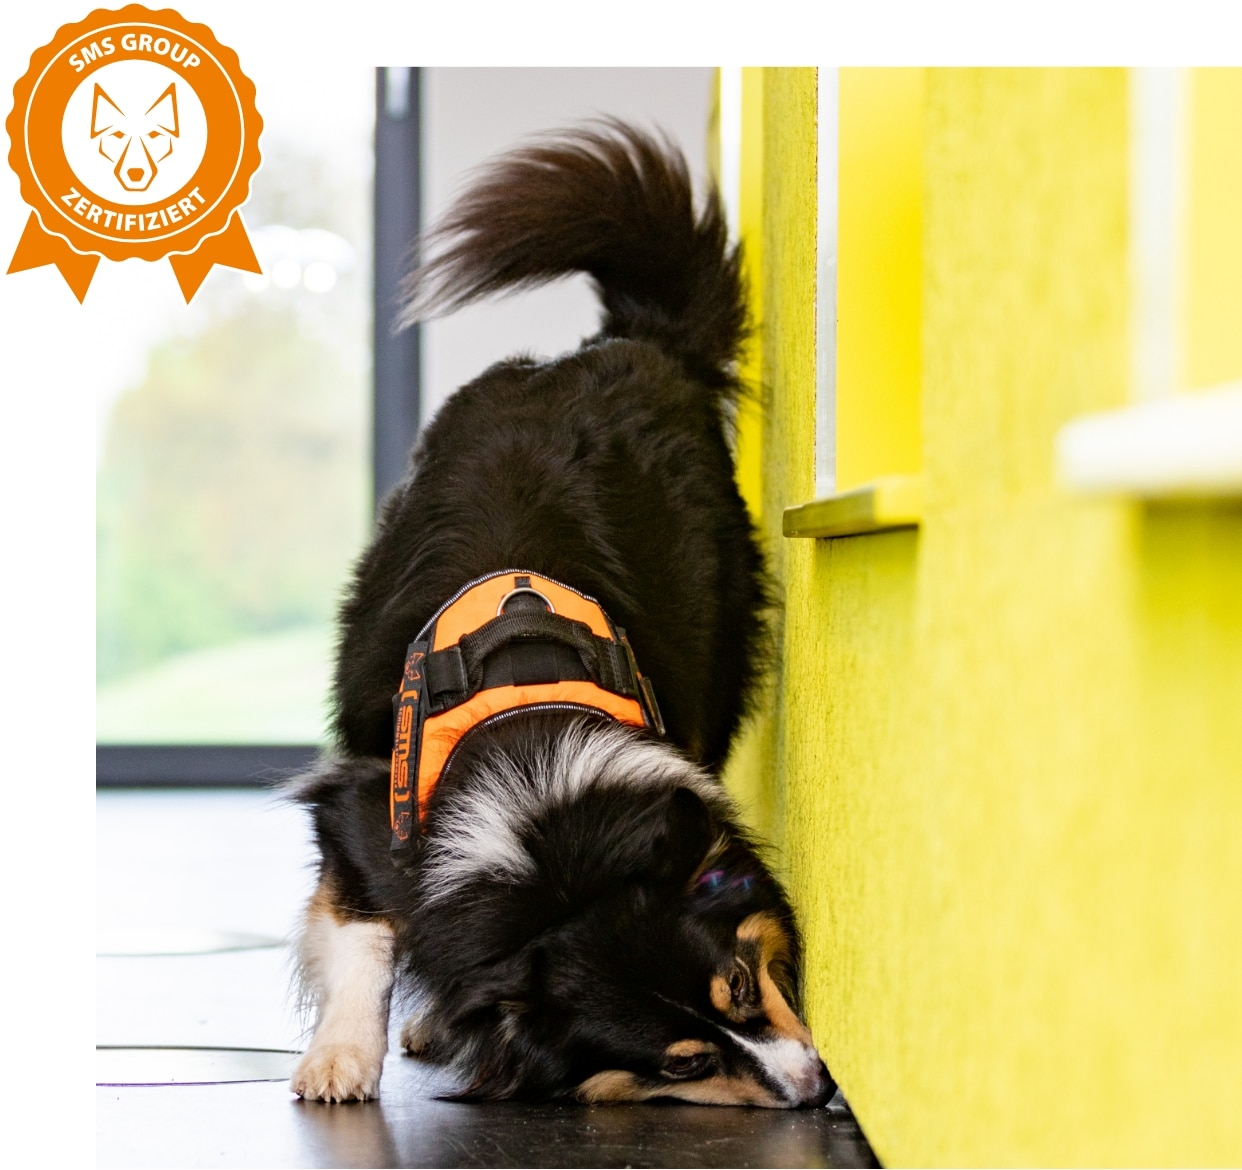 Schimmelspürhund Spikey auf Schimmelsuche, Australian Shepherd | SMS Group zertifiziert